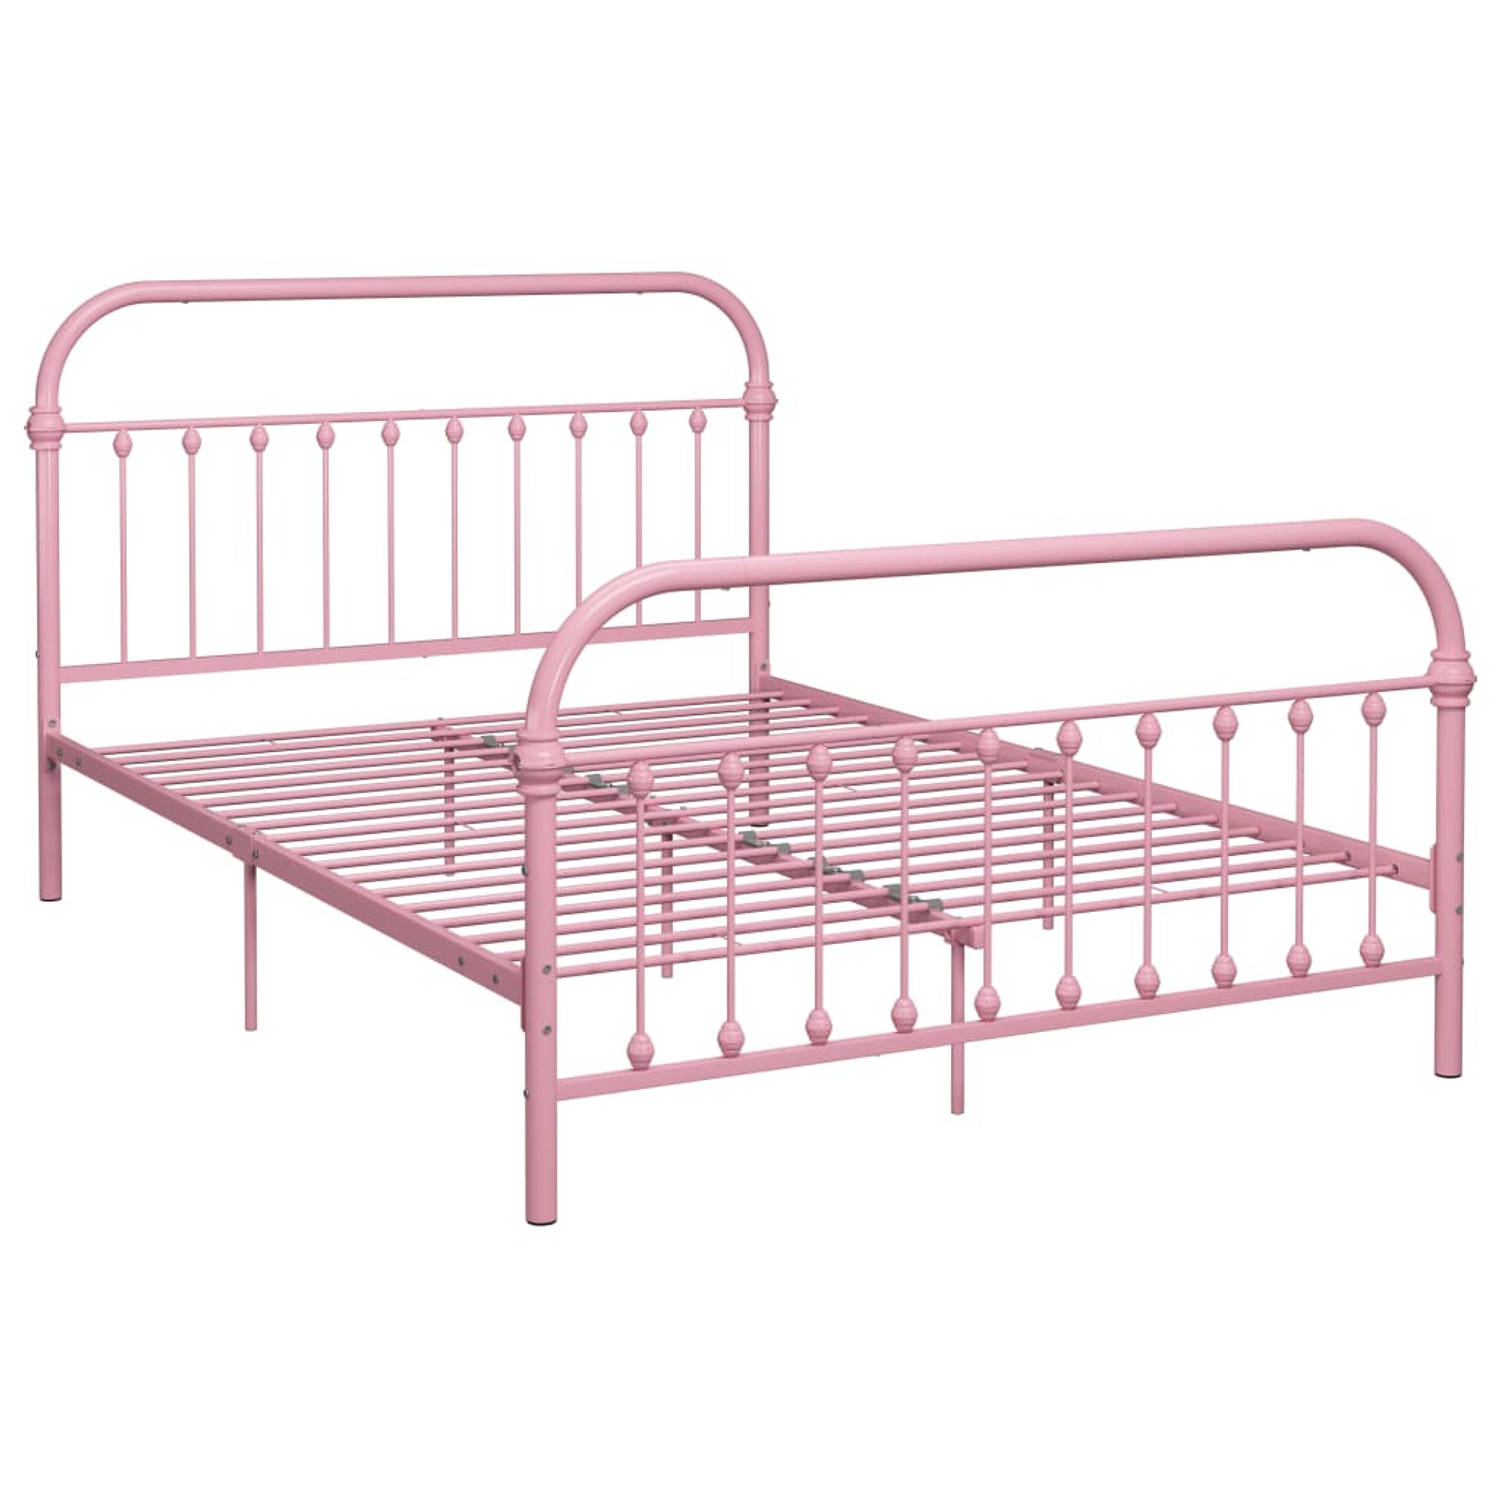 The Living Store Bedframe metaal roze 160x200 cm - Bedframe - Bedframes - Tweepersoonsbed - Tweepersoonsbedden - Bed - Bedden - Bedombouw - Bedombouwen - Frame - Frames - Slaapmeub